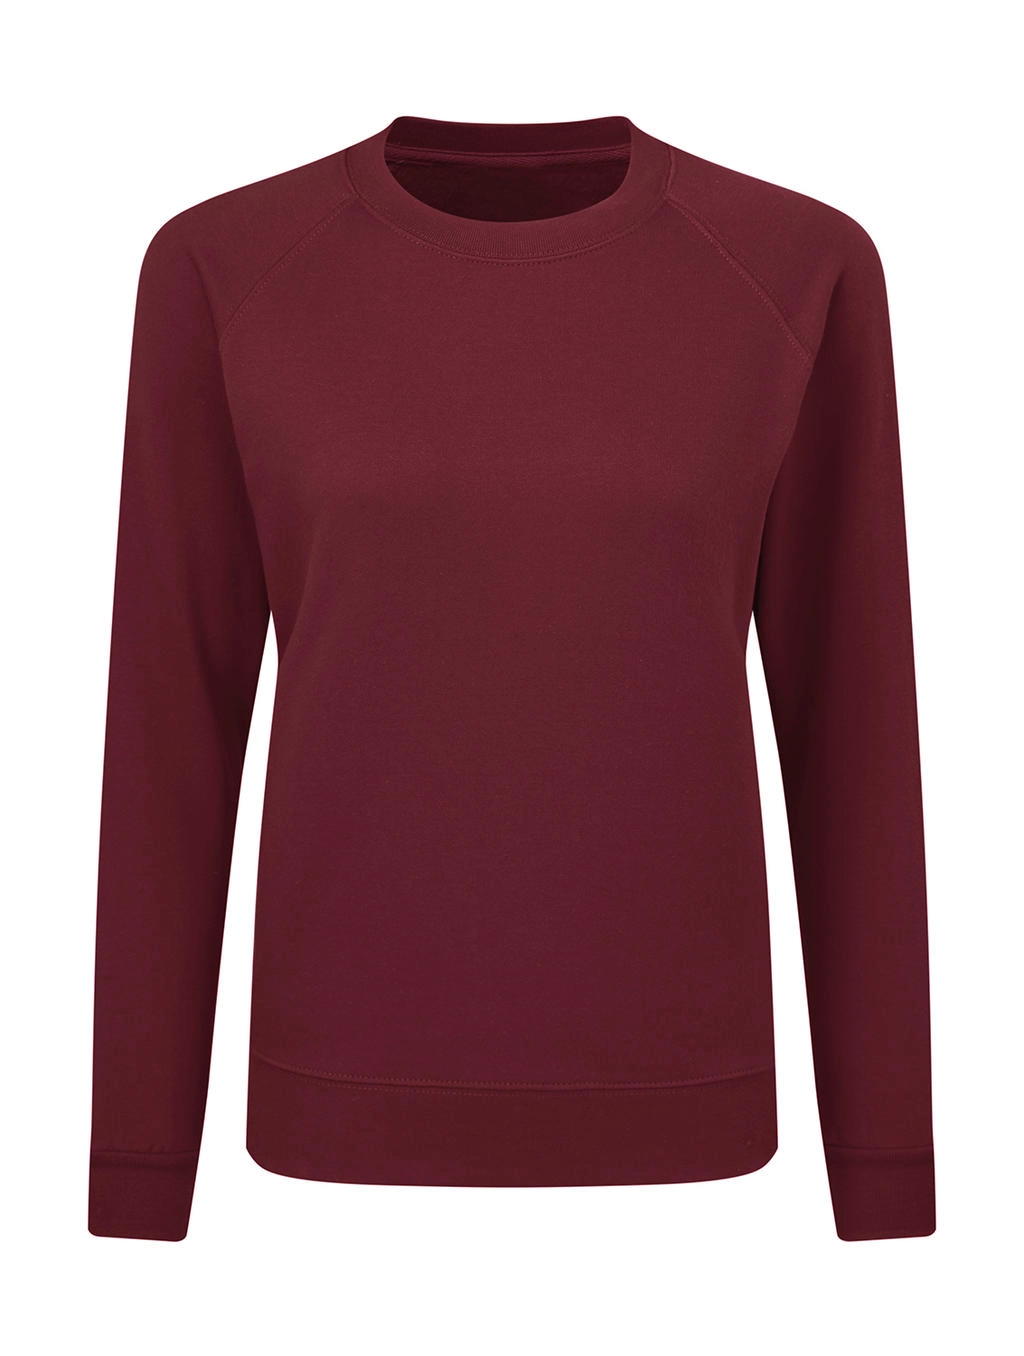 Raglan Sweatshirt Women zum Besticken und Bedrucken in der Farbe Burgundy mit Ihren Logo, Schriftzug oder Motiv.